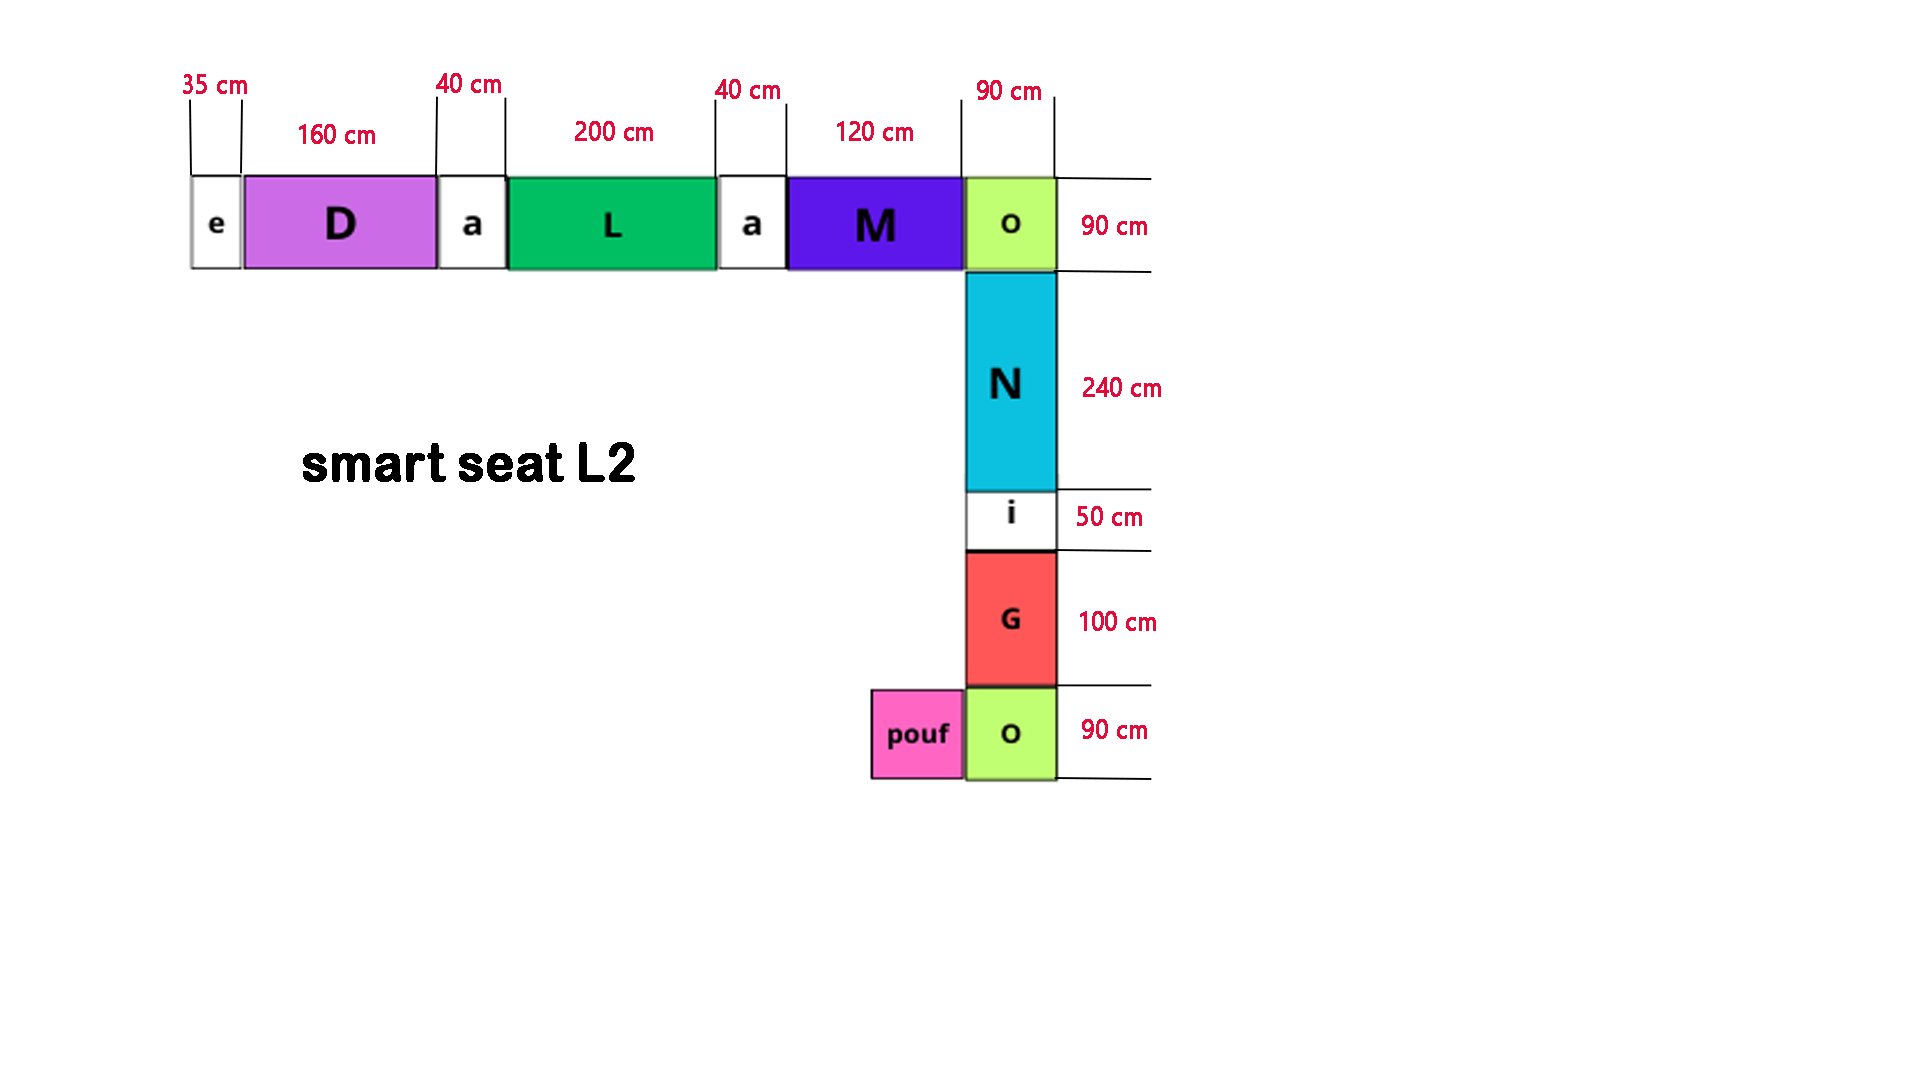 smart seat L 2